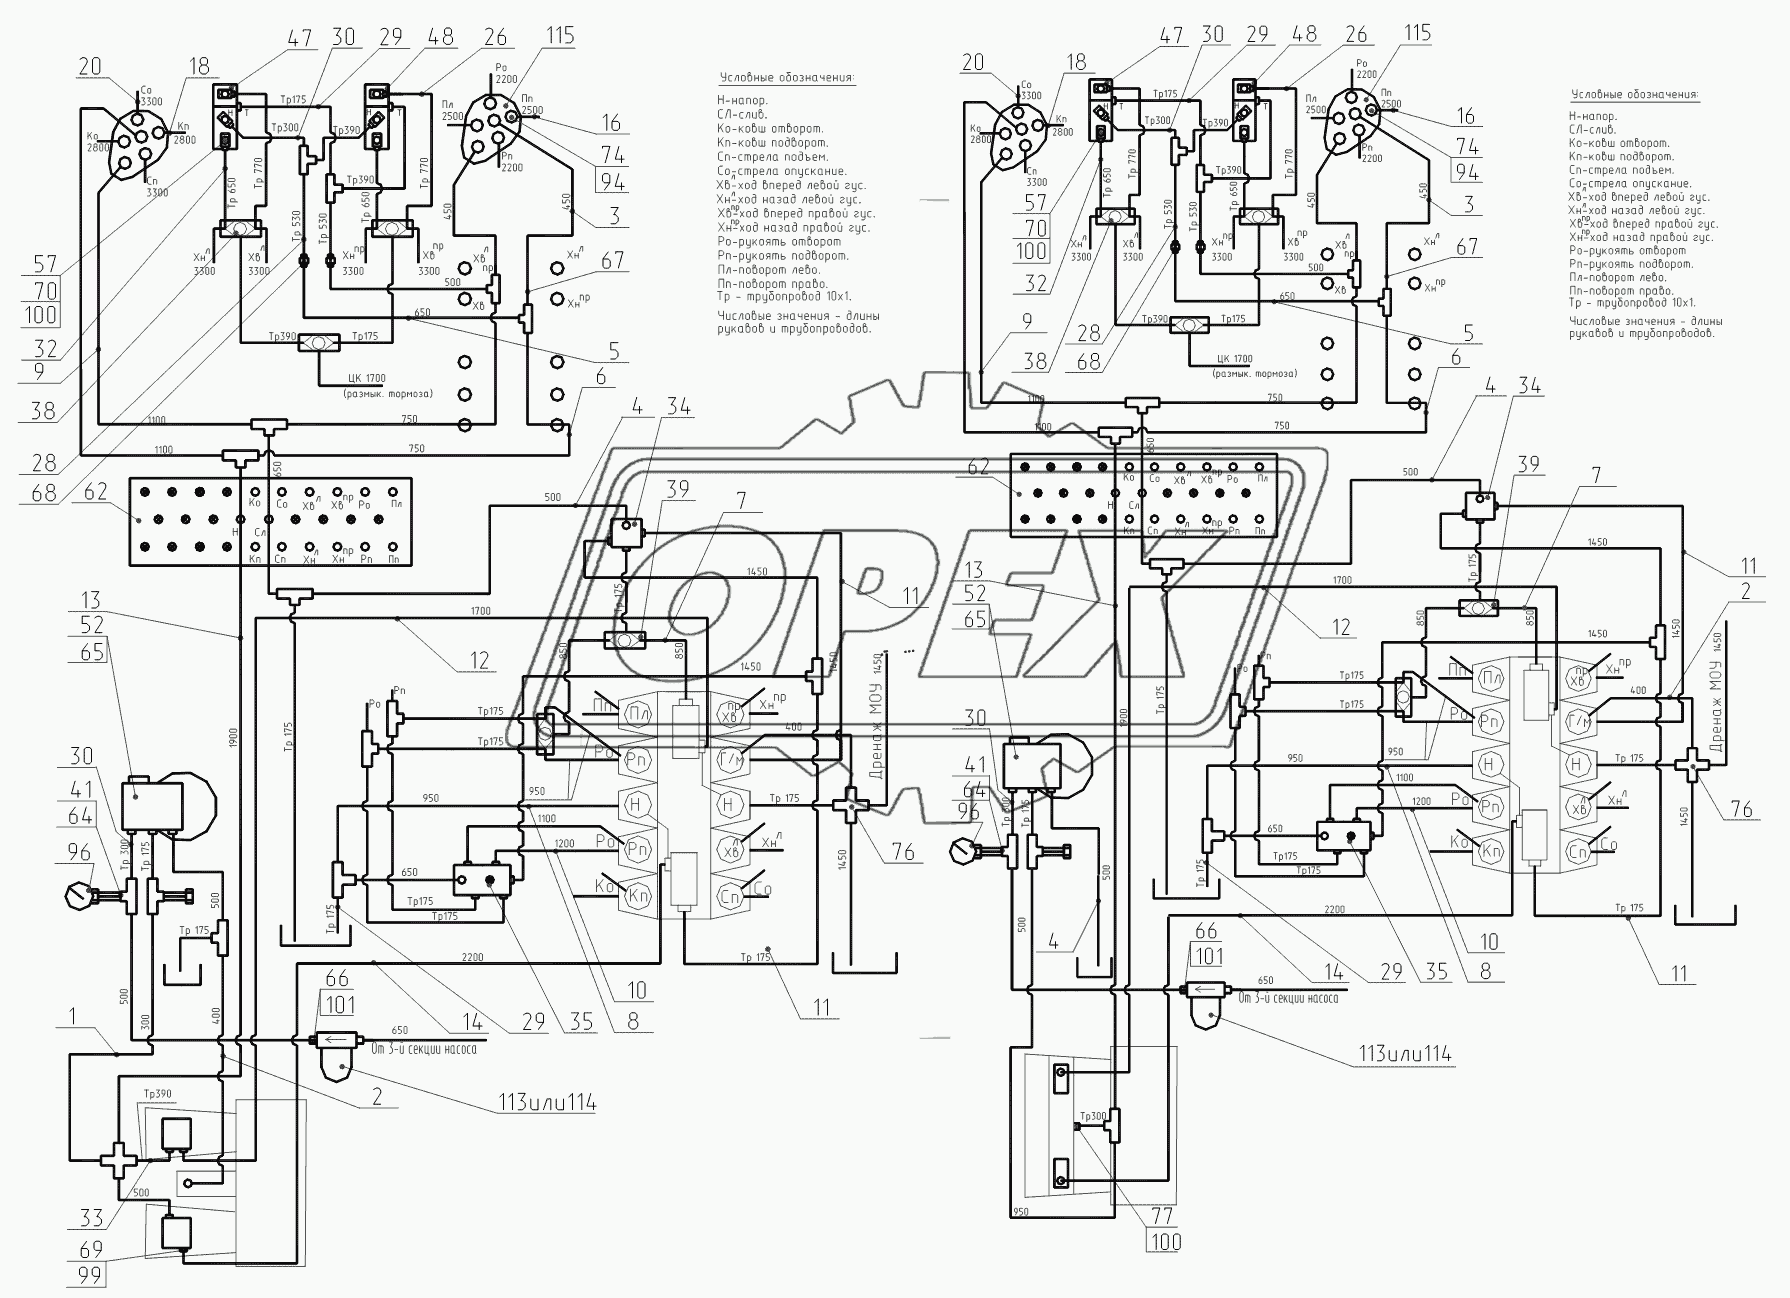 214-20-80.04.000 Гидроуправление на поворотной платформе (монтажная схема) (с гидравликой ПСМ), 214-20-80.04.000-10 (с гидравликой Bosch-Rexroth)